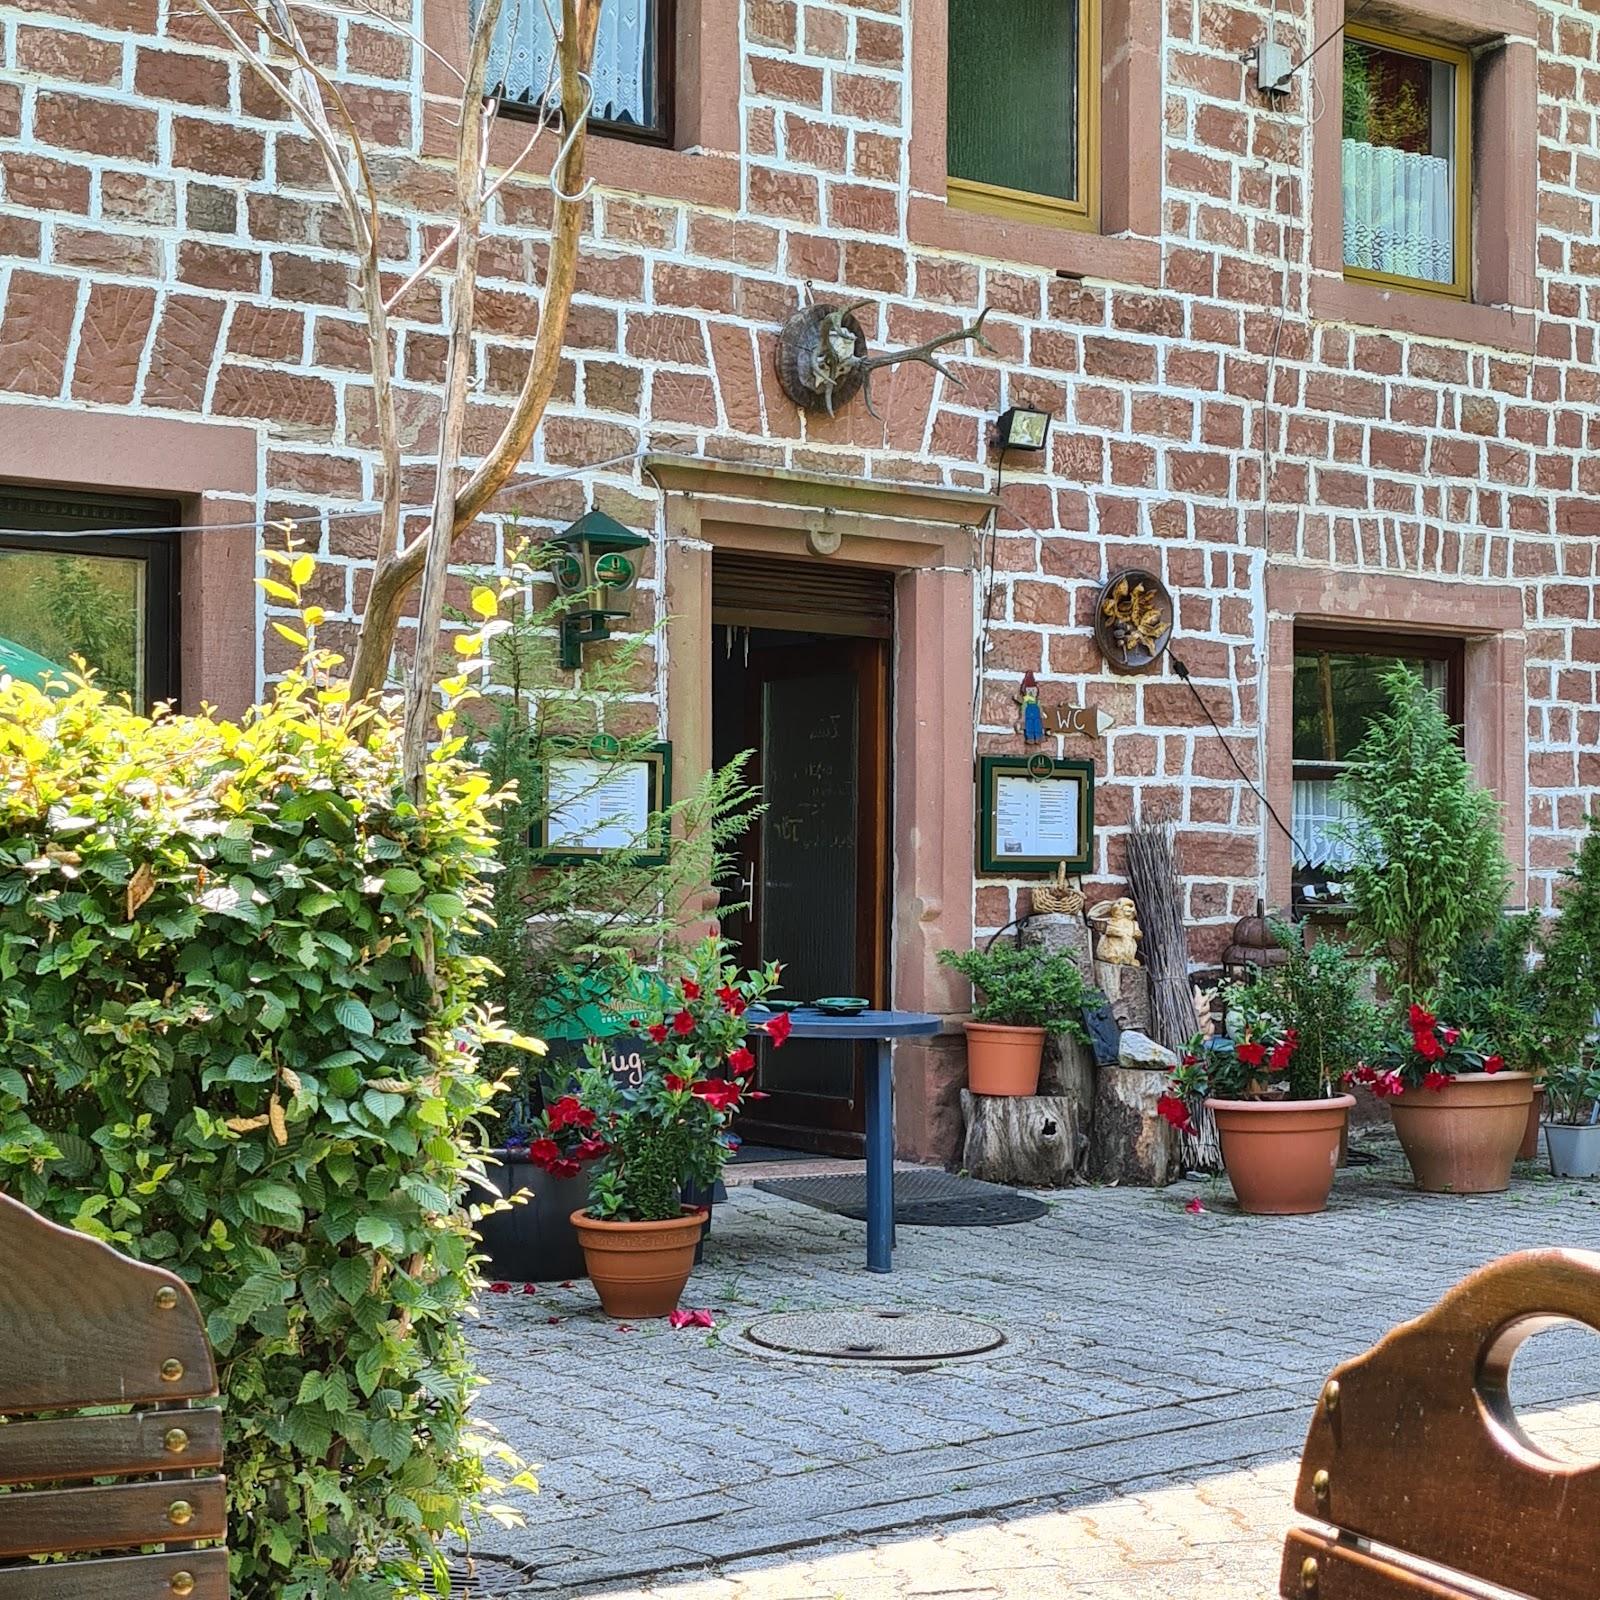 Restaurant "Stilles Tal" in Elmstein